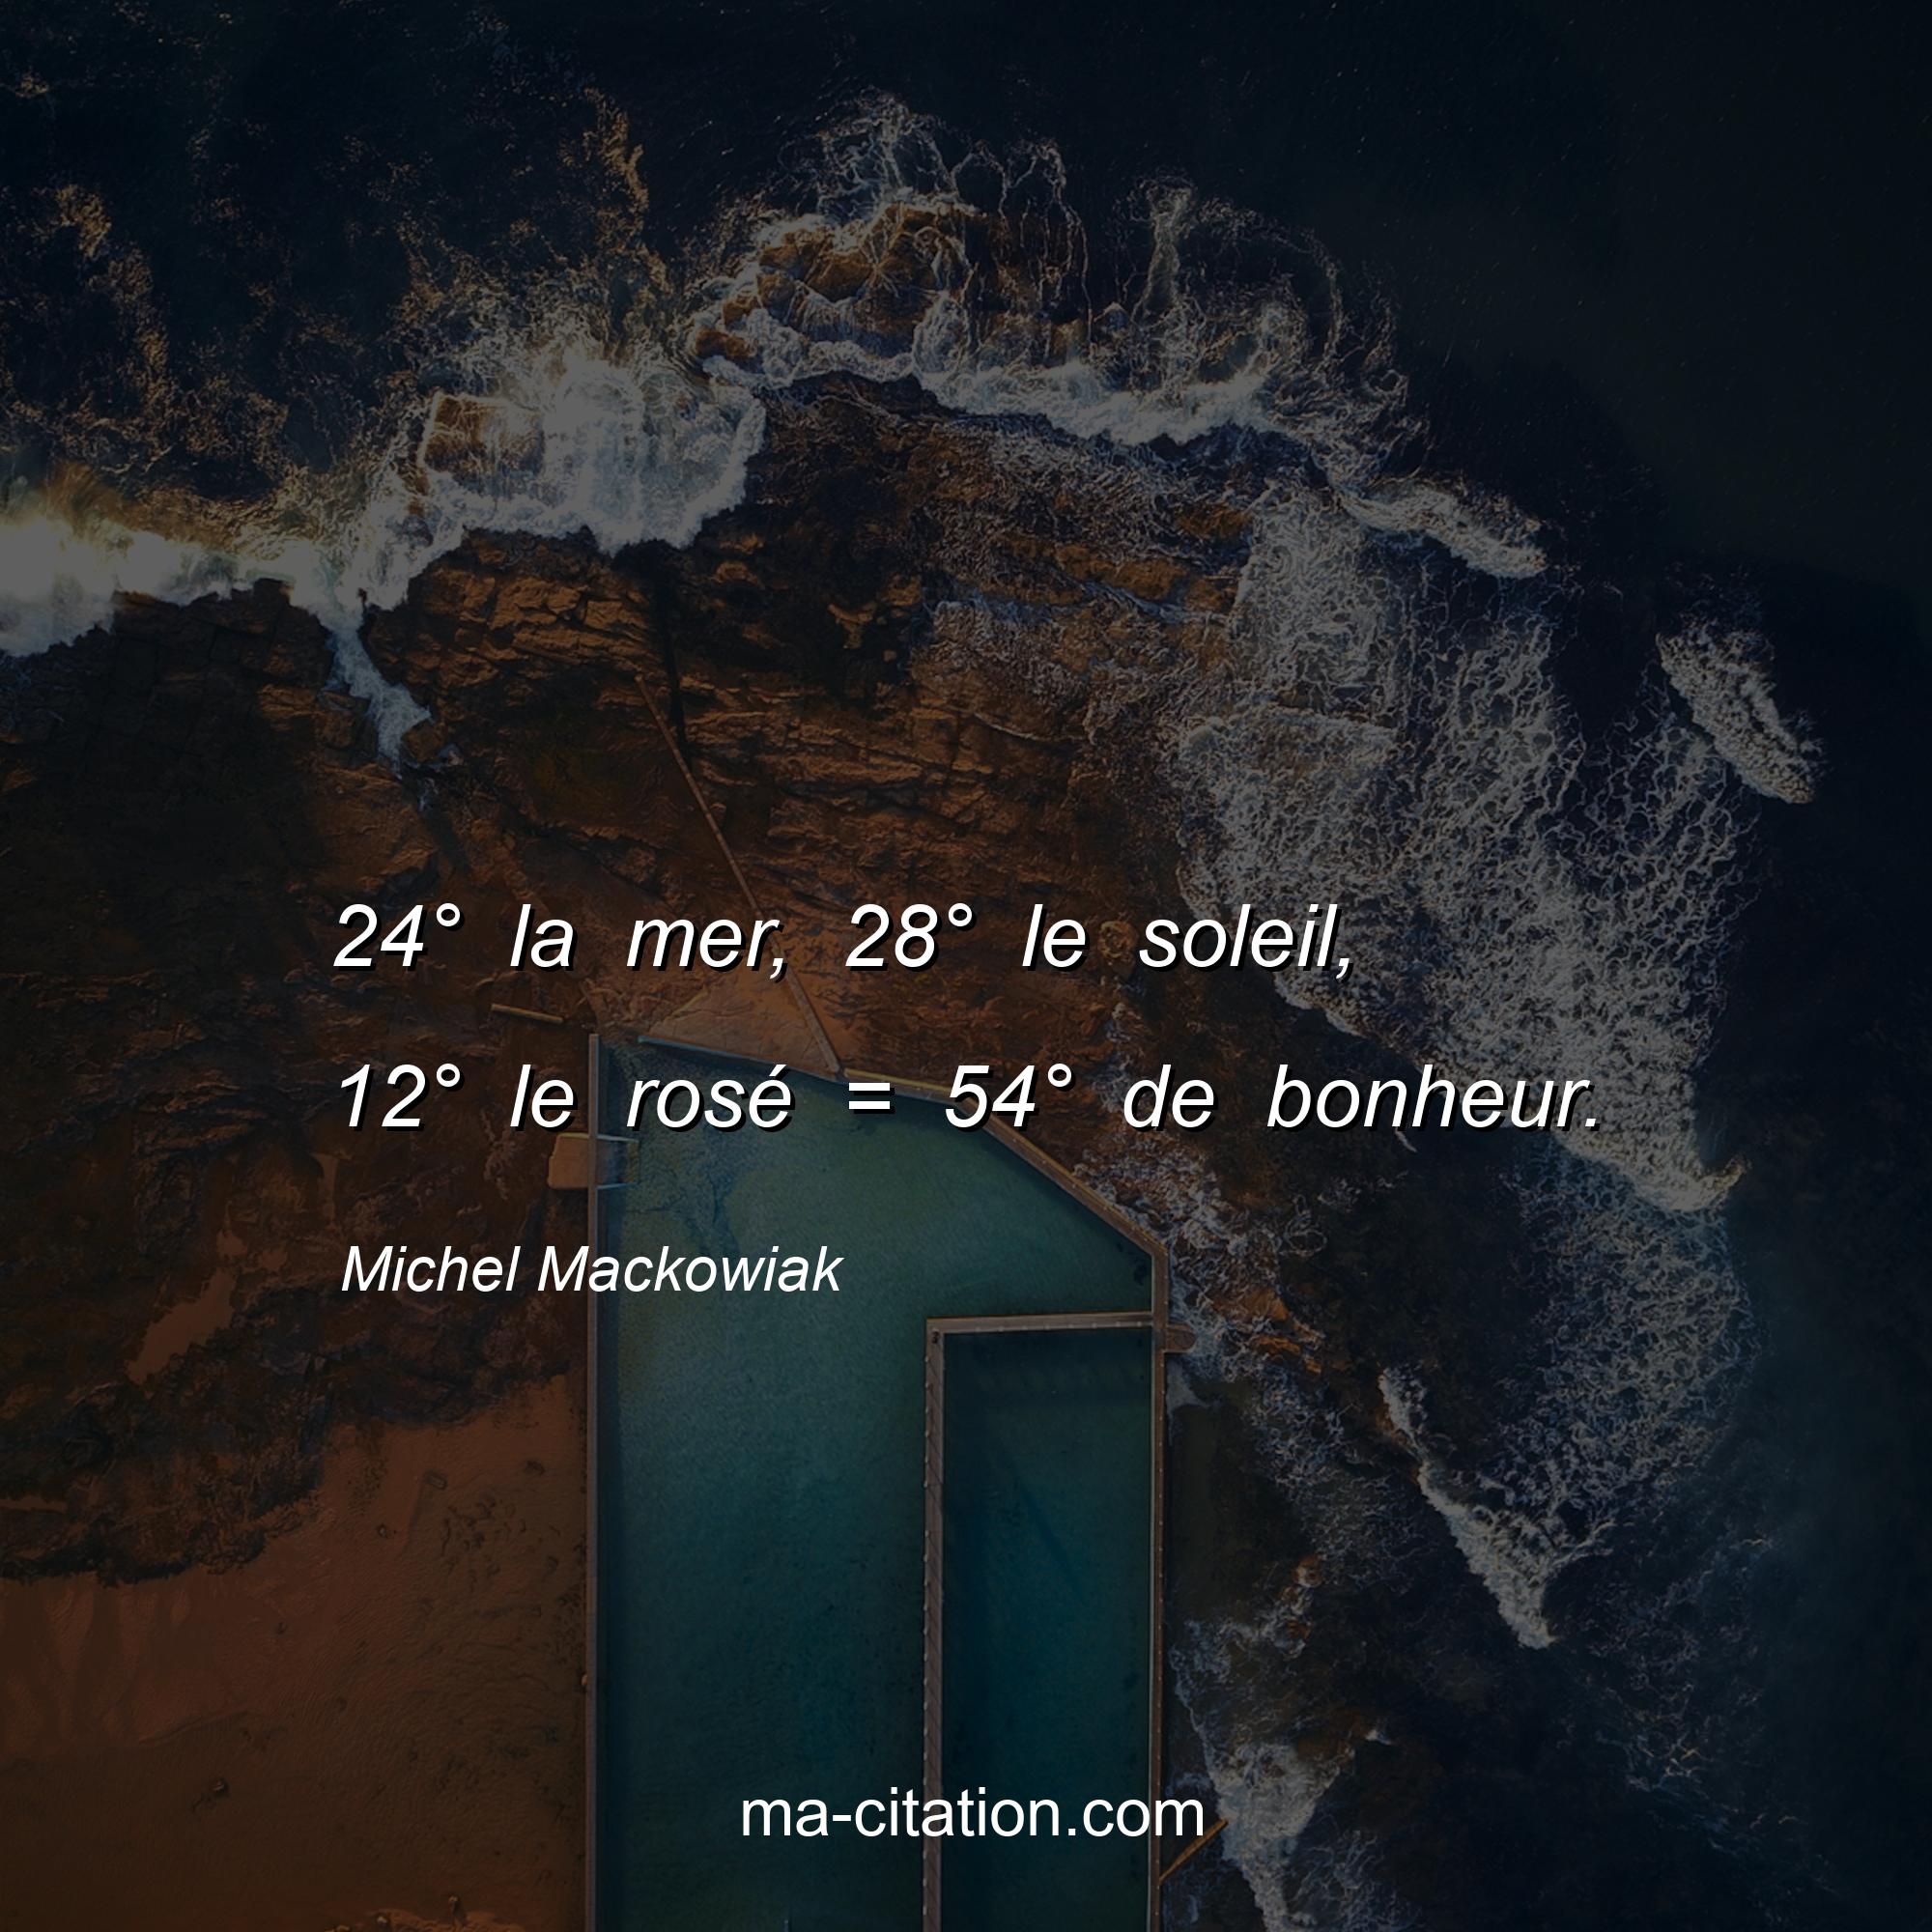 Michel Mackowiak : 24° la mer, 28° le soleil, 12° le rosé = 54° de bonheur.